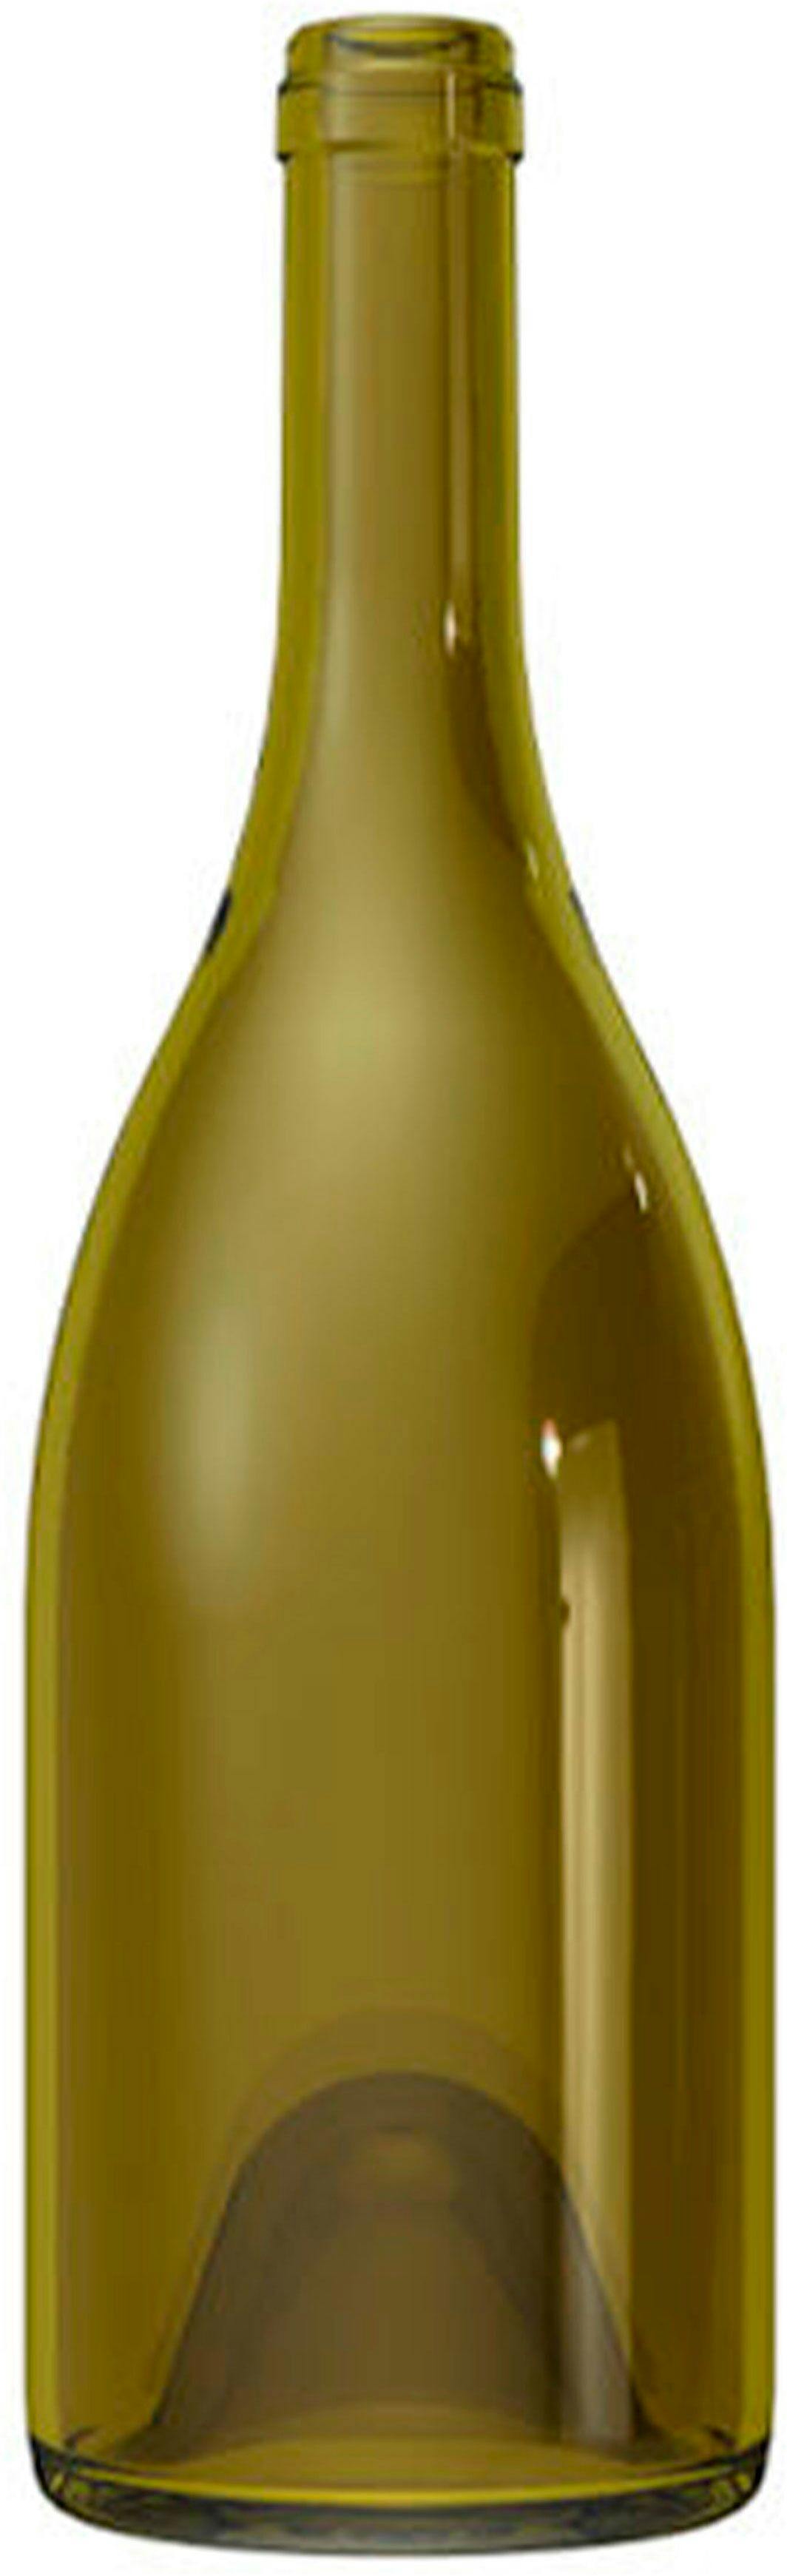 Garrafa Borgonha   DUCASSE 750 ml BG-Cortiça 